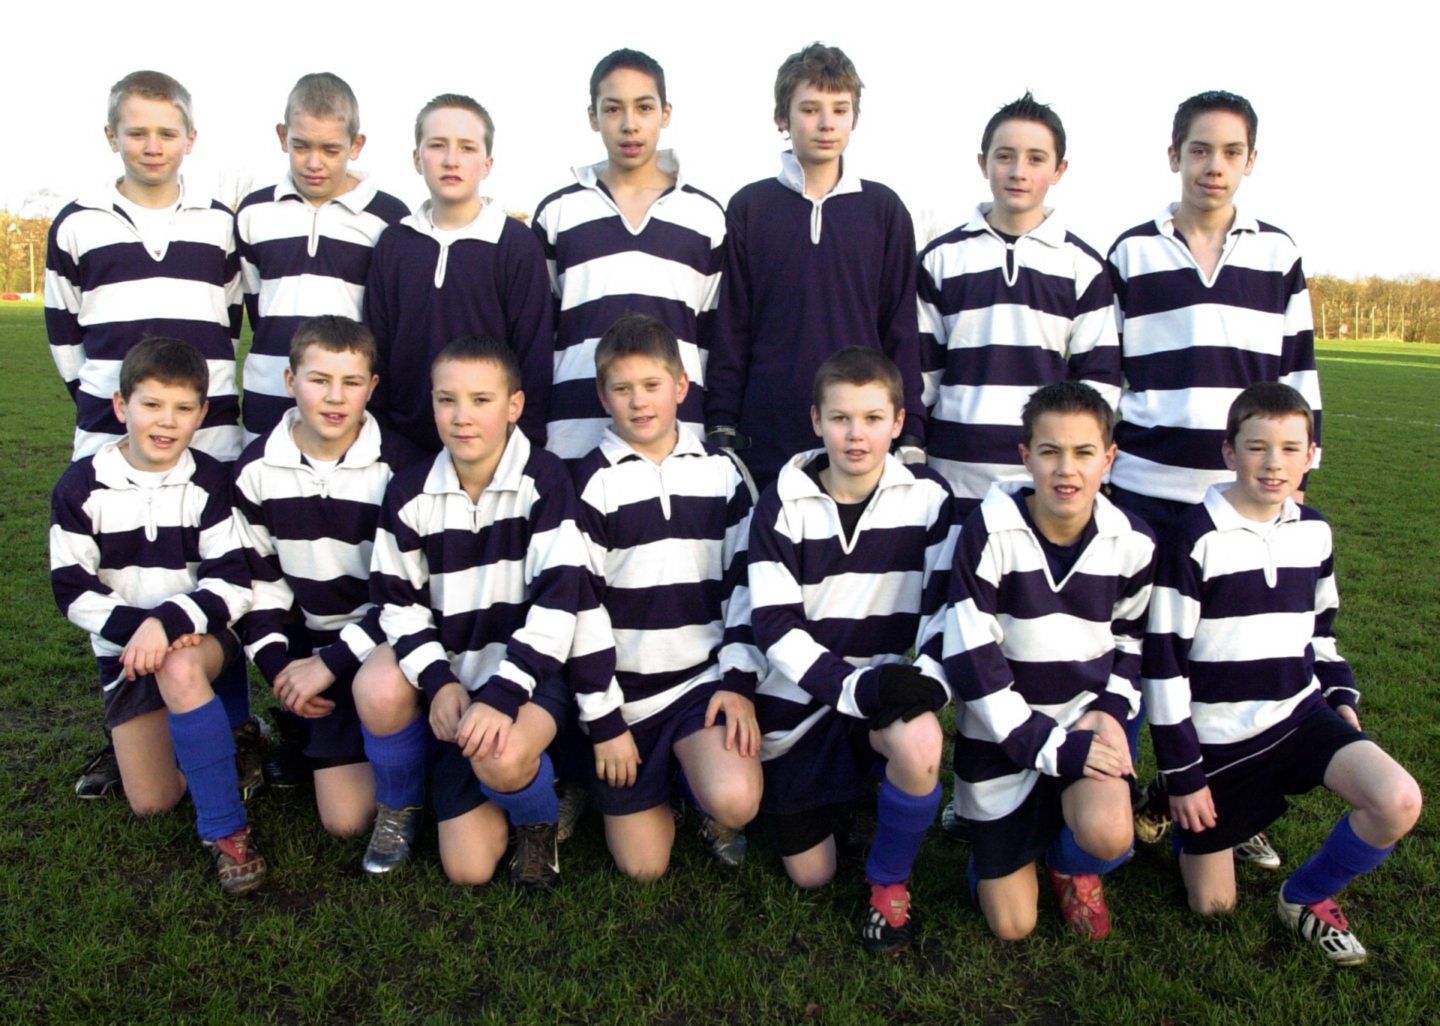 The Aberdeen Grammar under-13 football team photo in 2003.